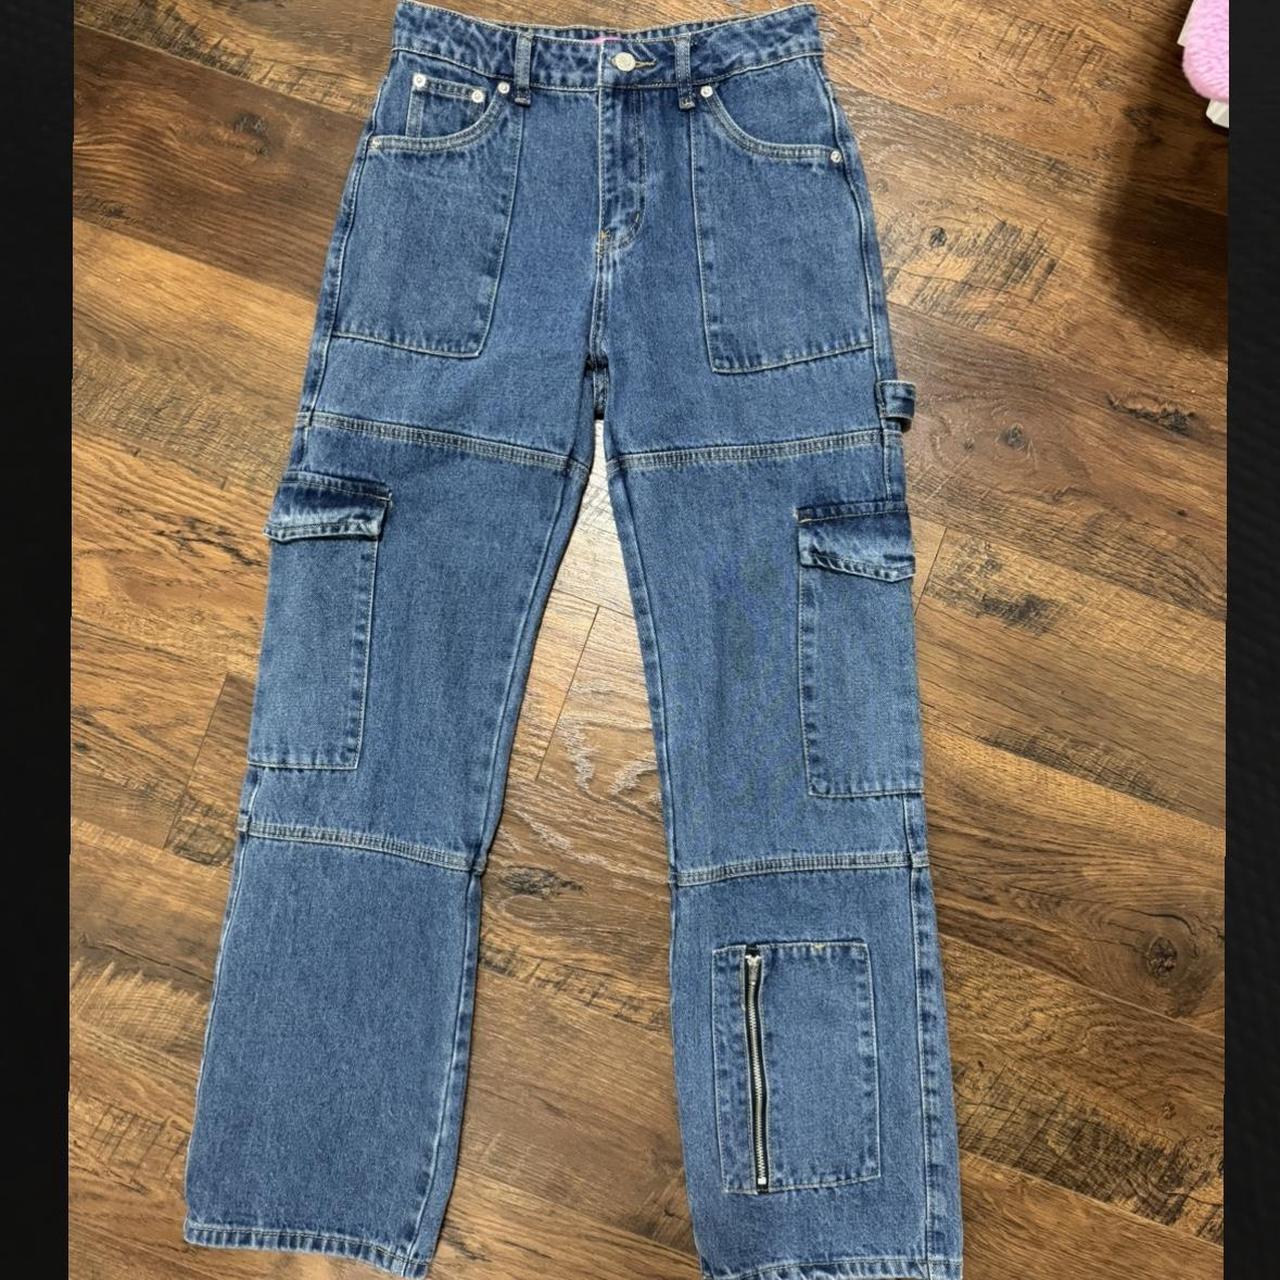 Edikted Cargo jeans Boyfriend fit Lightly worn - no... - Depop